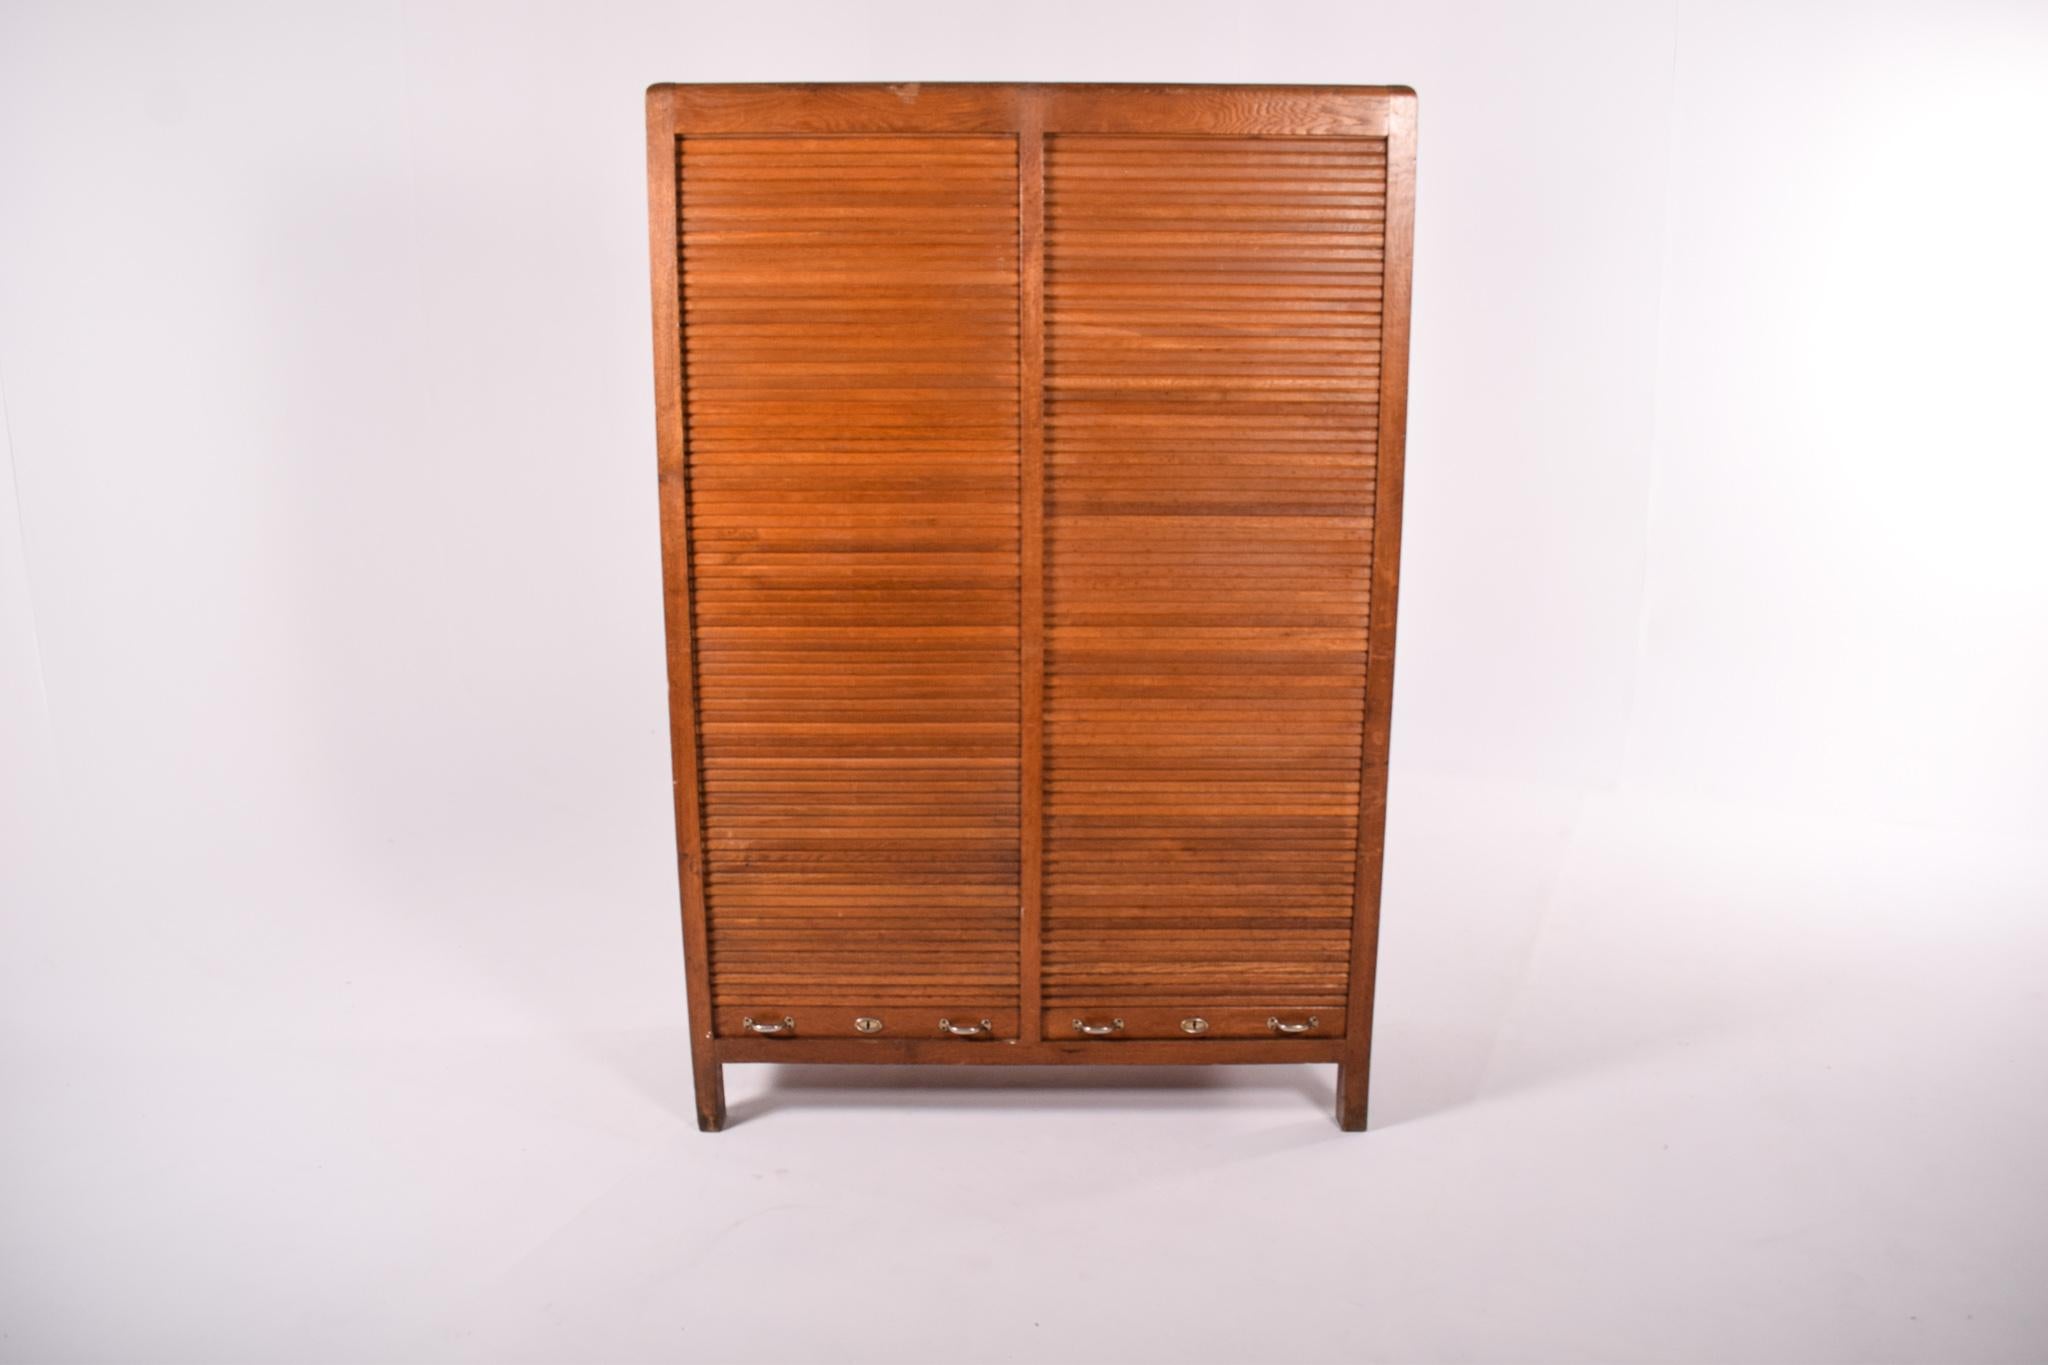 Dieser Vintage-Schrank aus Eichenholz aus den 1950er Jahren ist ein klassisches Möbelstück aus der Mitte des Jahrhunderts mit ausgeprägtem portugiesischem Flair, das von der geschätzten Firma Olaio hergestellt wurde. Das Design des Schranks ist